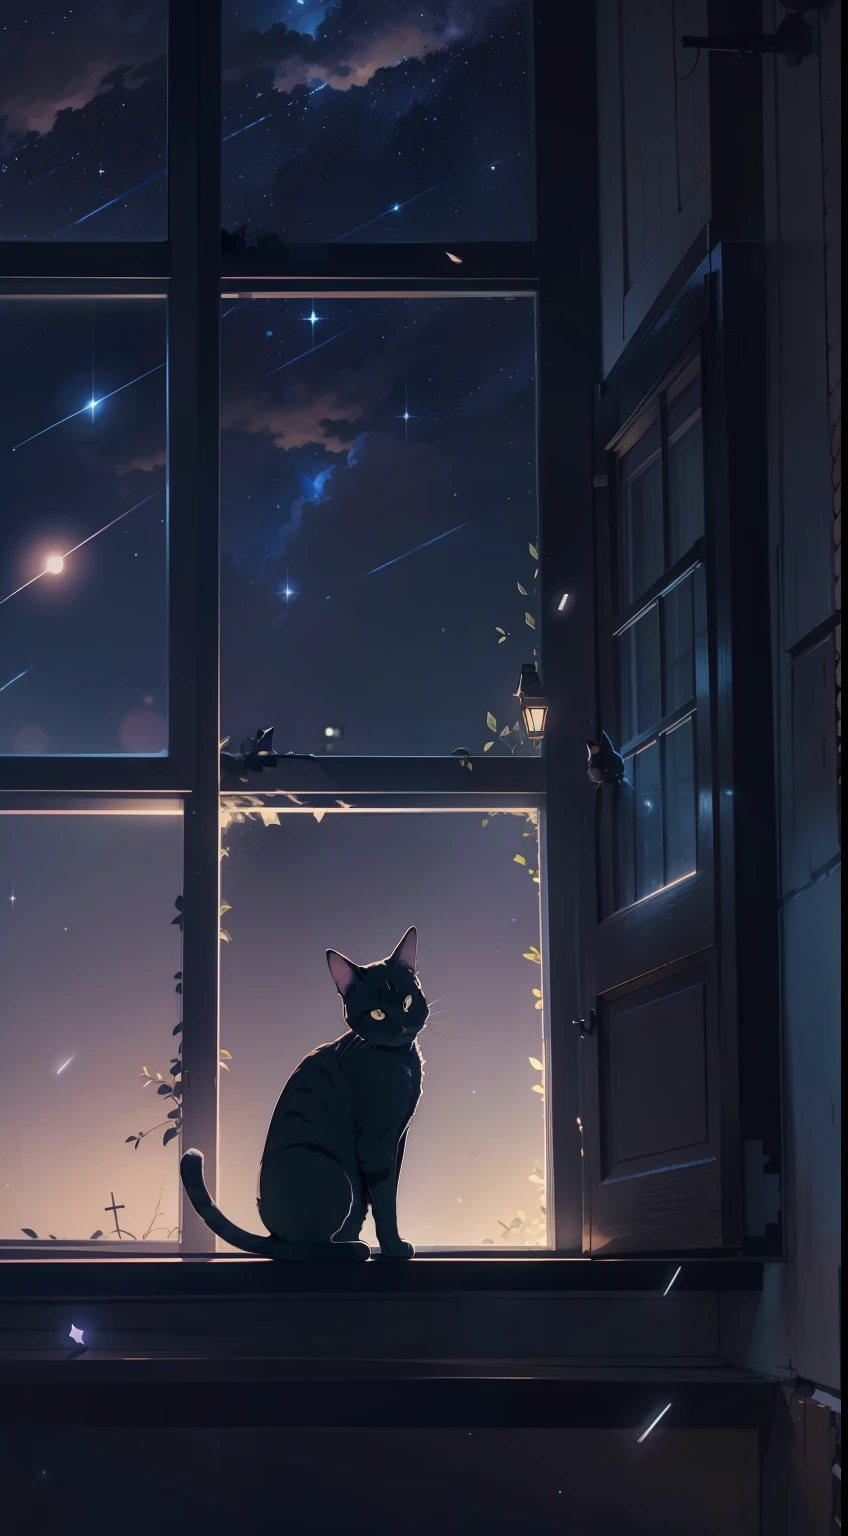 창턱에 웅크리고 있는 작은 고양이, 슈팅 스타, 밤하늘, 애니메이션 스타일, 키아로스쿠로, 시네마틱 조명, 역광, 실루엣, 밑에서부터, 8K, 슈퍼 디테일, 정확한, 최고의 품질, 높은 세부 사항